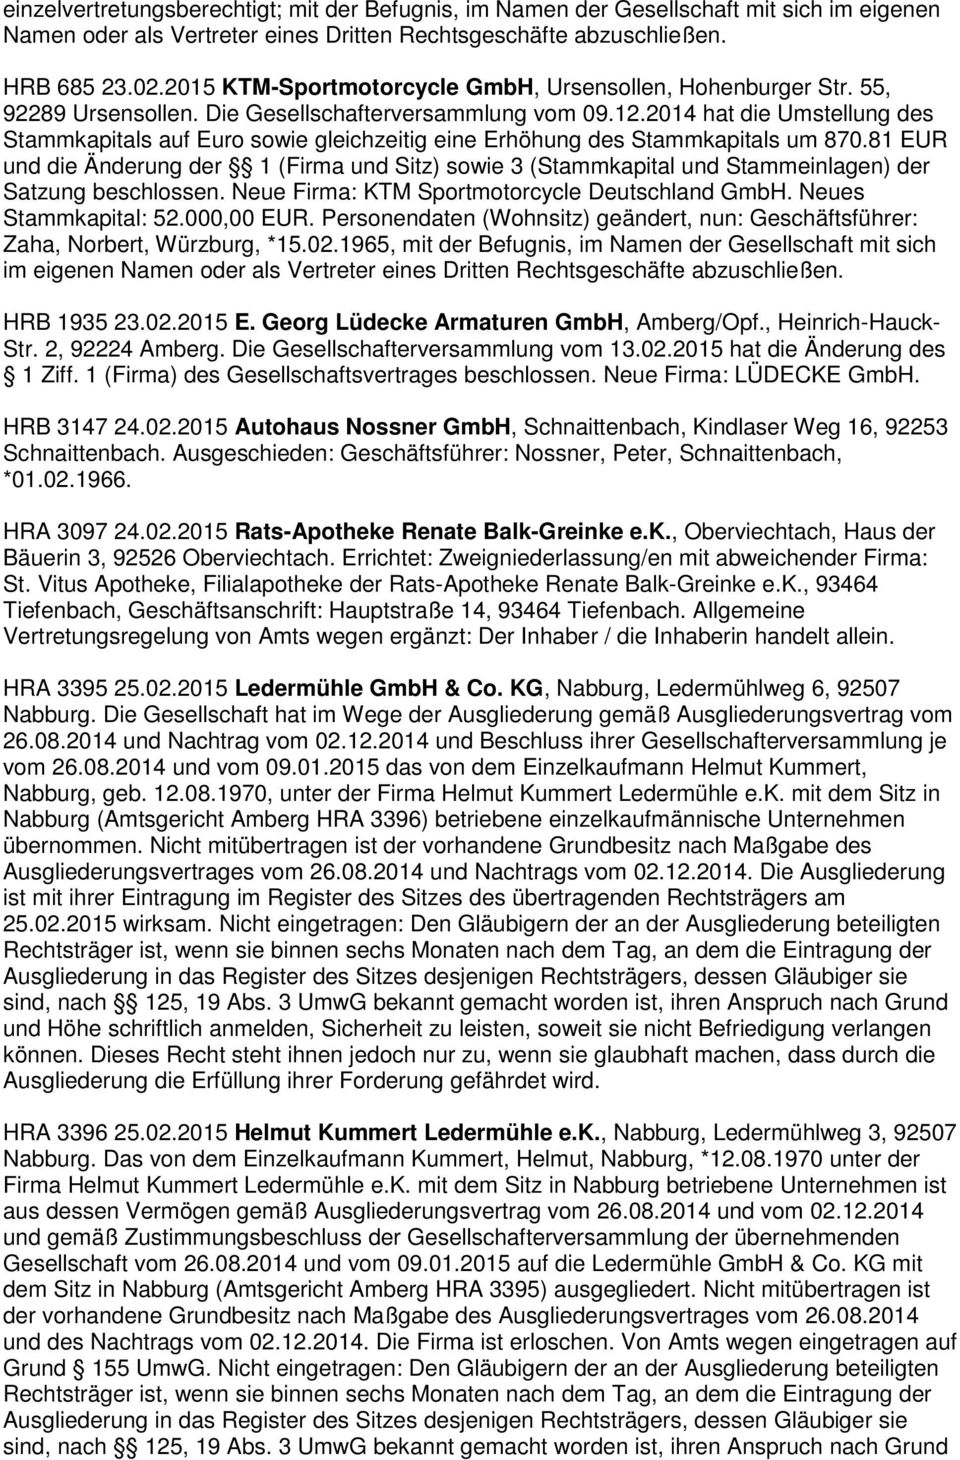 81 EUR und die Änderung der 1 (Firma und Sitz) sowie 3 (Stammkapital und Stammeinlagen) der Satzung beschlossen. Neue Firma: KTM Sportmotorcycle Deutschland GmbH. Neues Stammkapital: 52.000,00 EUR.